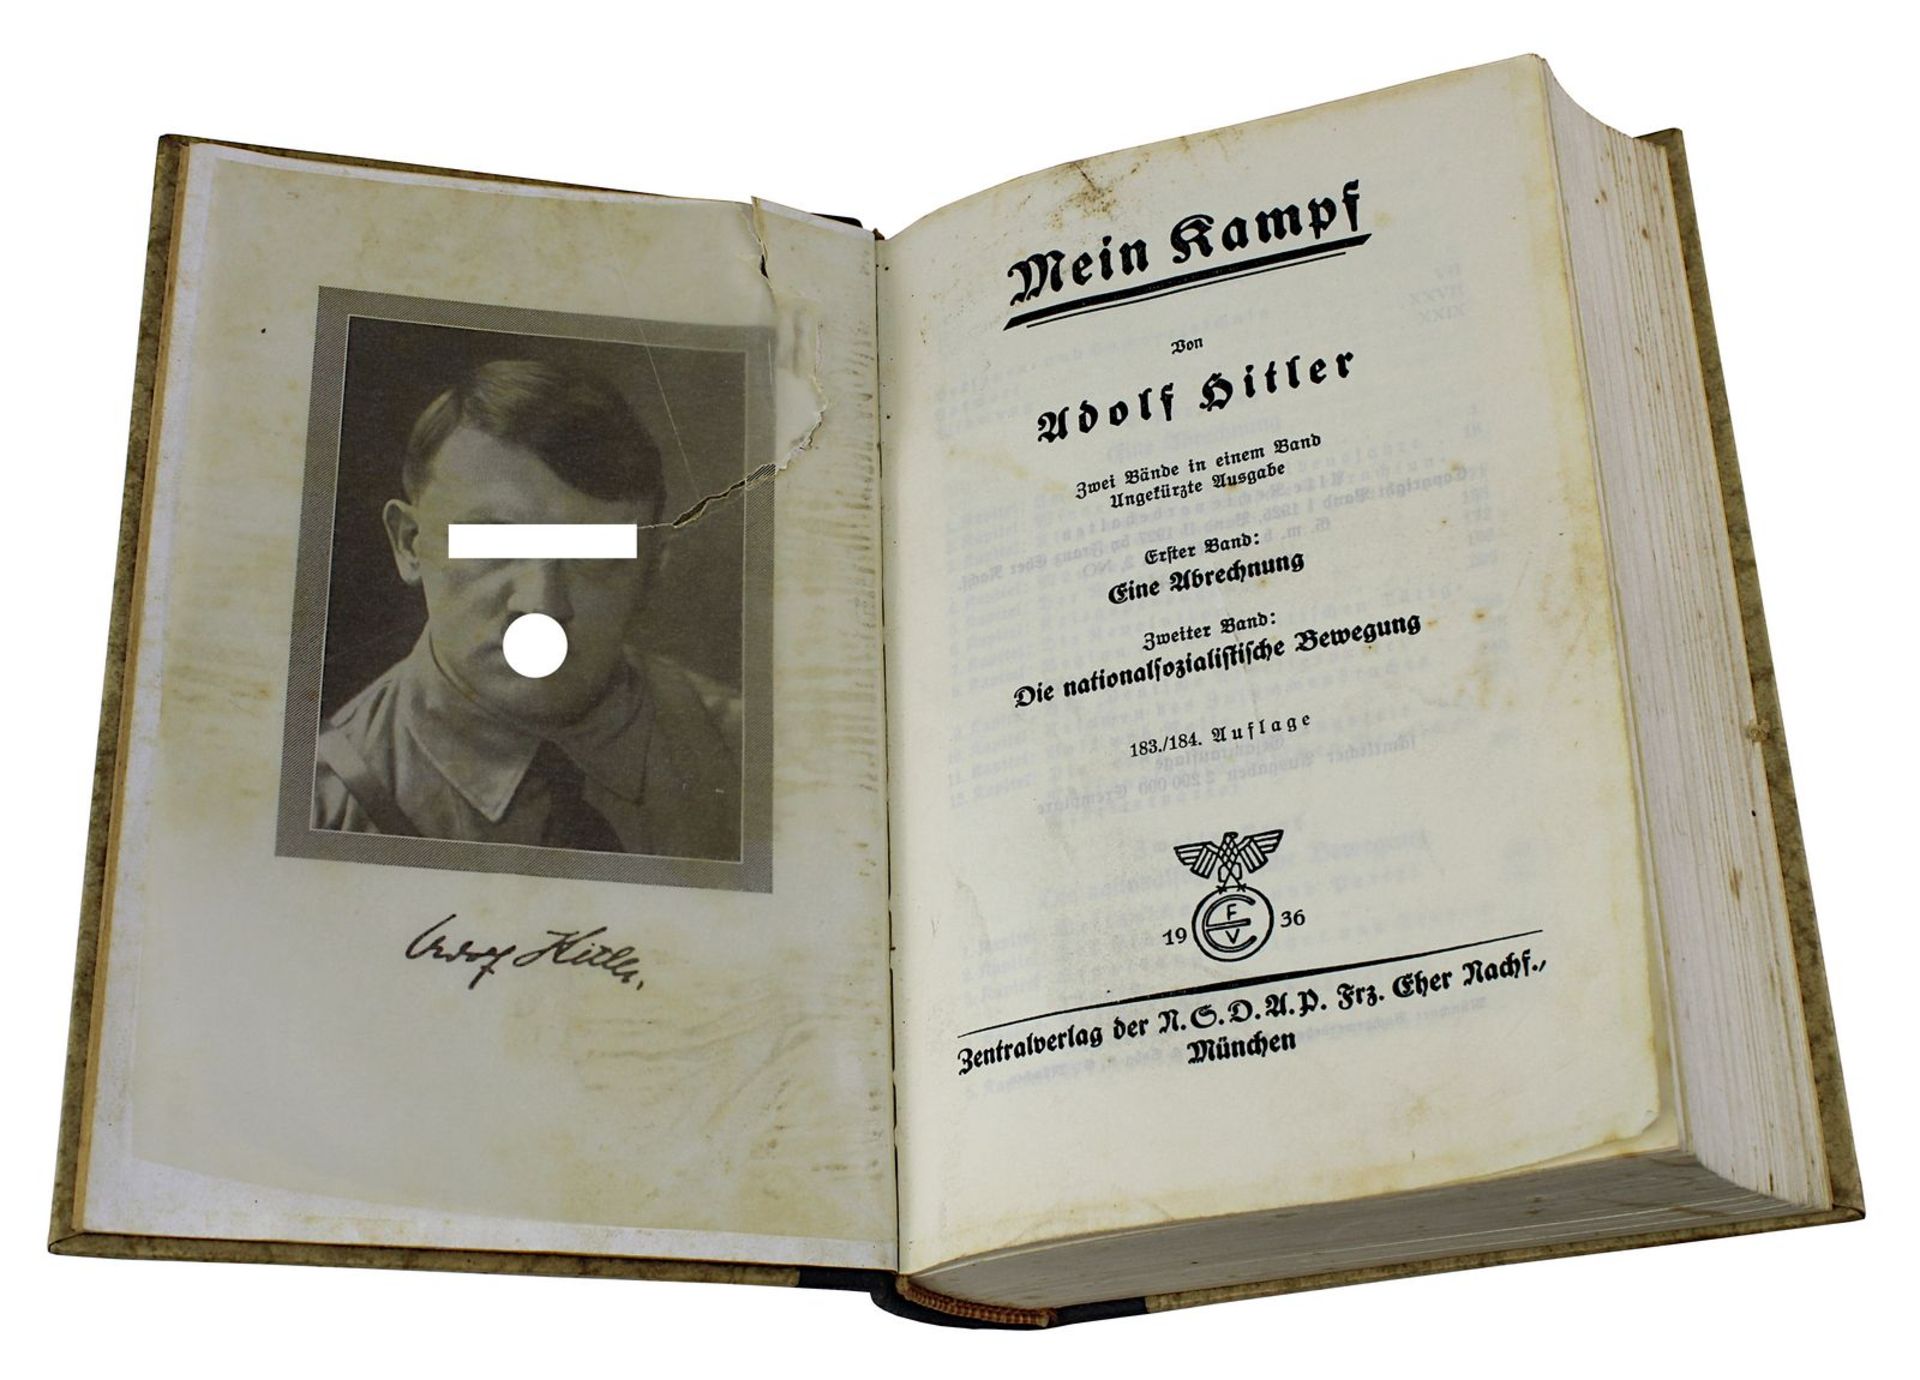 Hitler, Adolf "Mein Kampf", zwei Bände in einem Band, 183./184. Auflage, 1936, Zentralverlag der